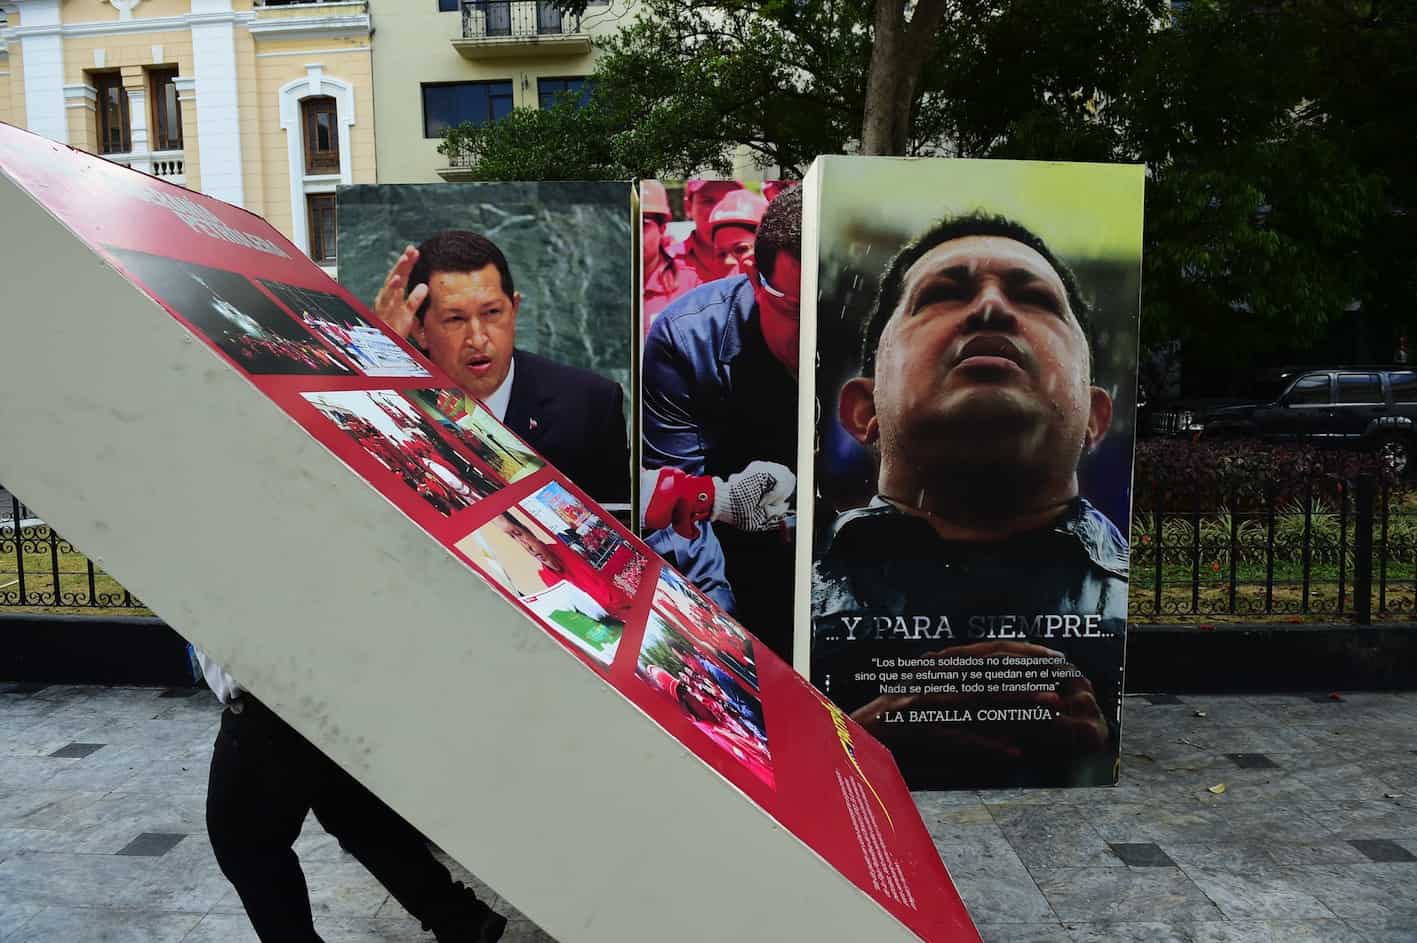 Venezuela National Assembly employees carrying images of Hugo Chávez